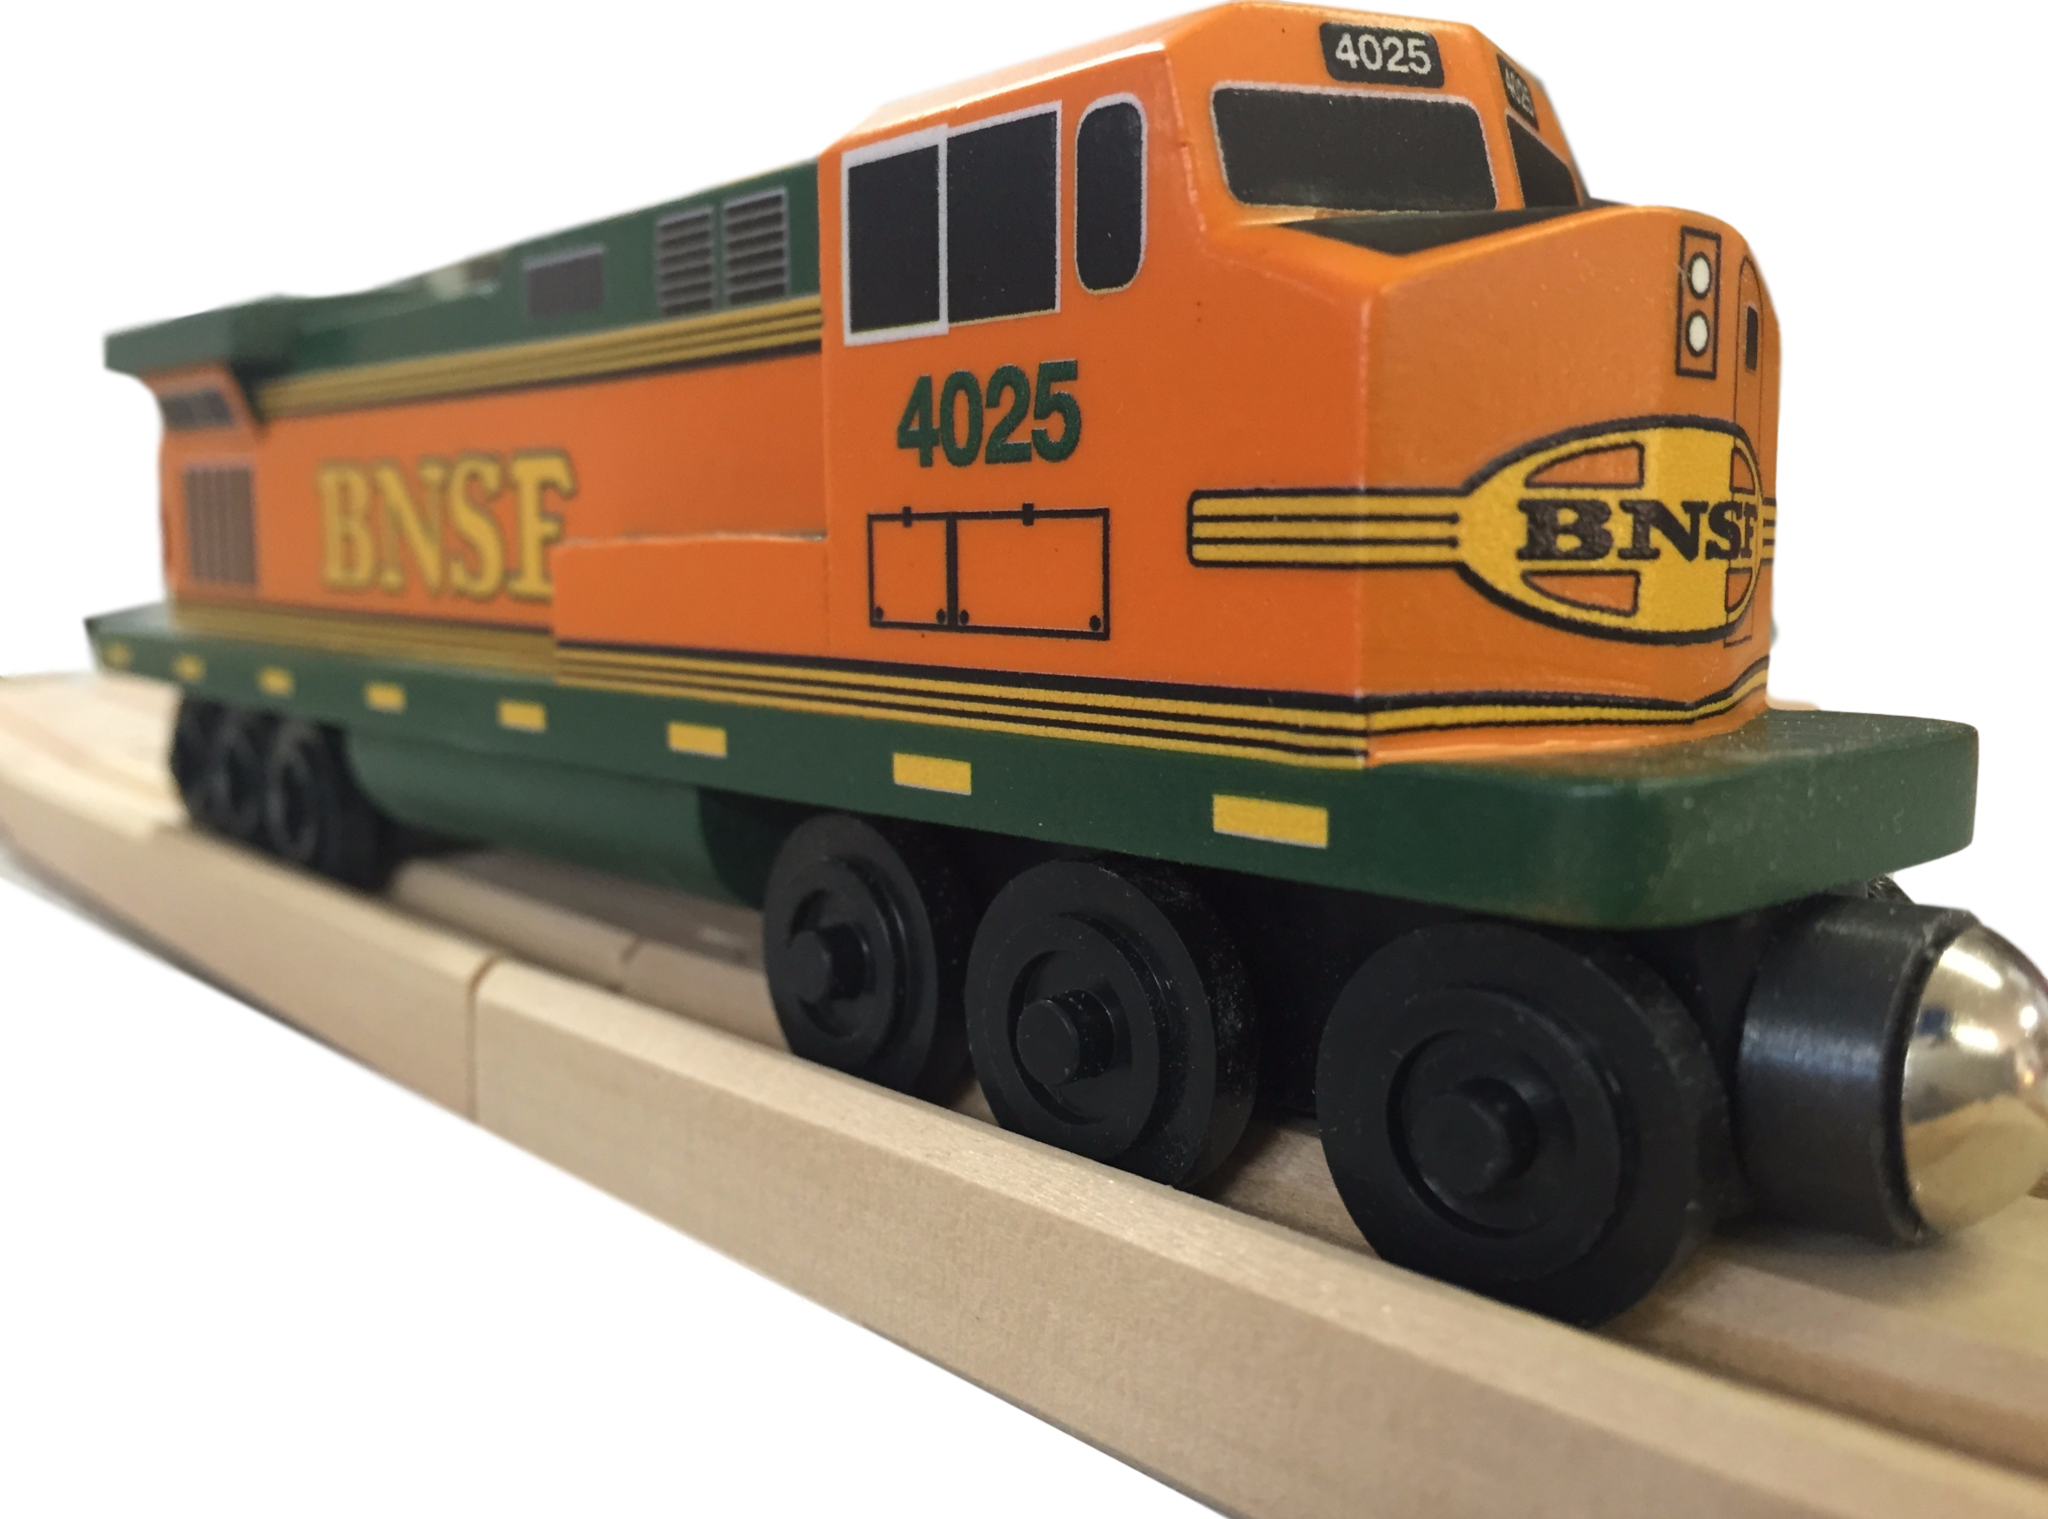 Whittle Shortline Railroad BNSF Pumpkin C-44 Diesel Engine Wooden Toy Train